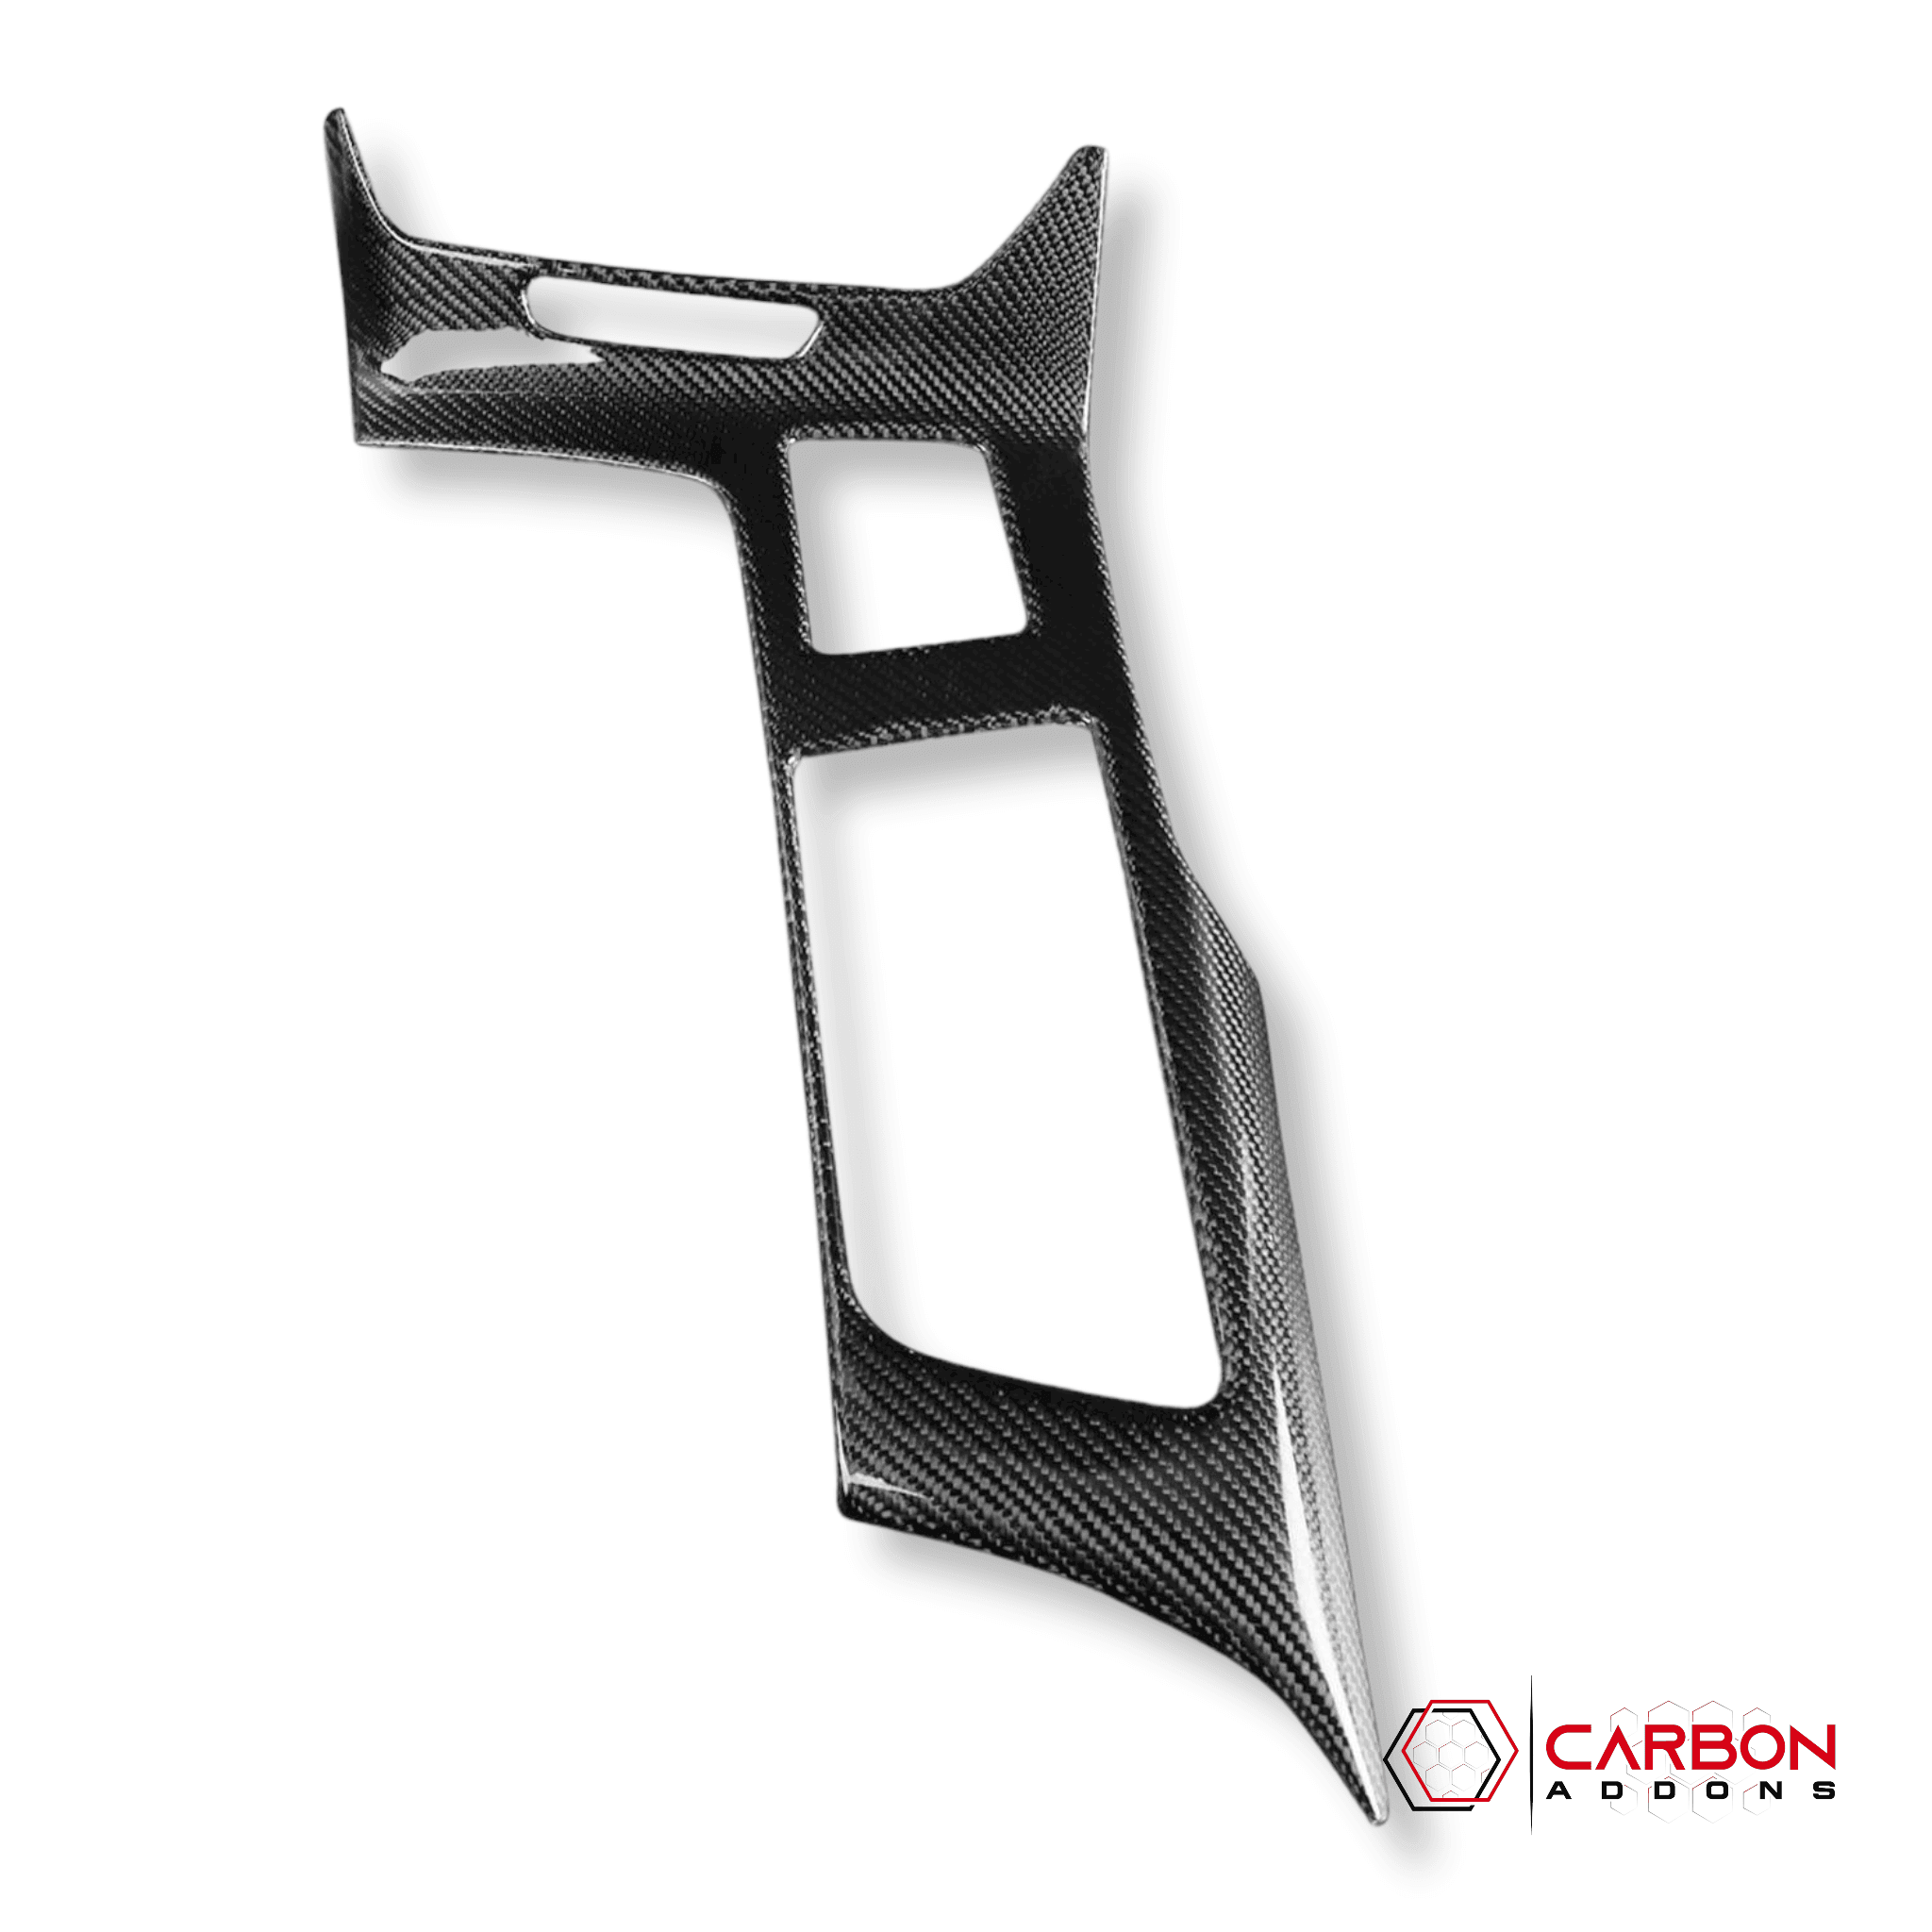 C7 Corvette 2014-2019 Carbon Fiber Center Console Cover - carbonaddons Carbon Fiber Parts, Accessories, Upgrades, Mods